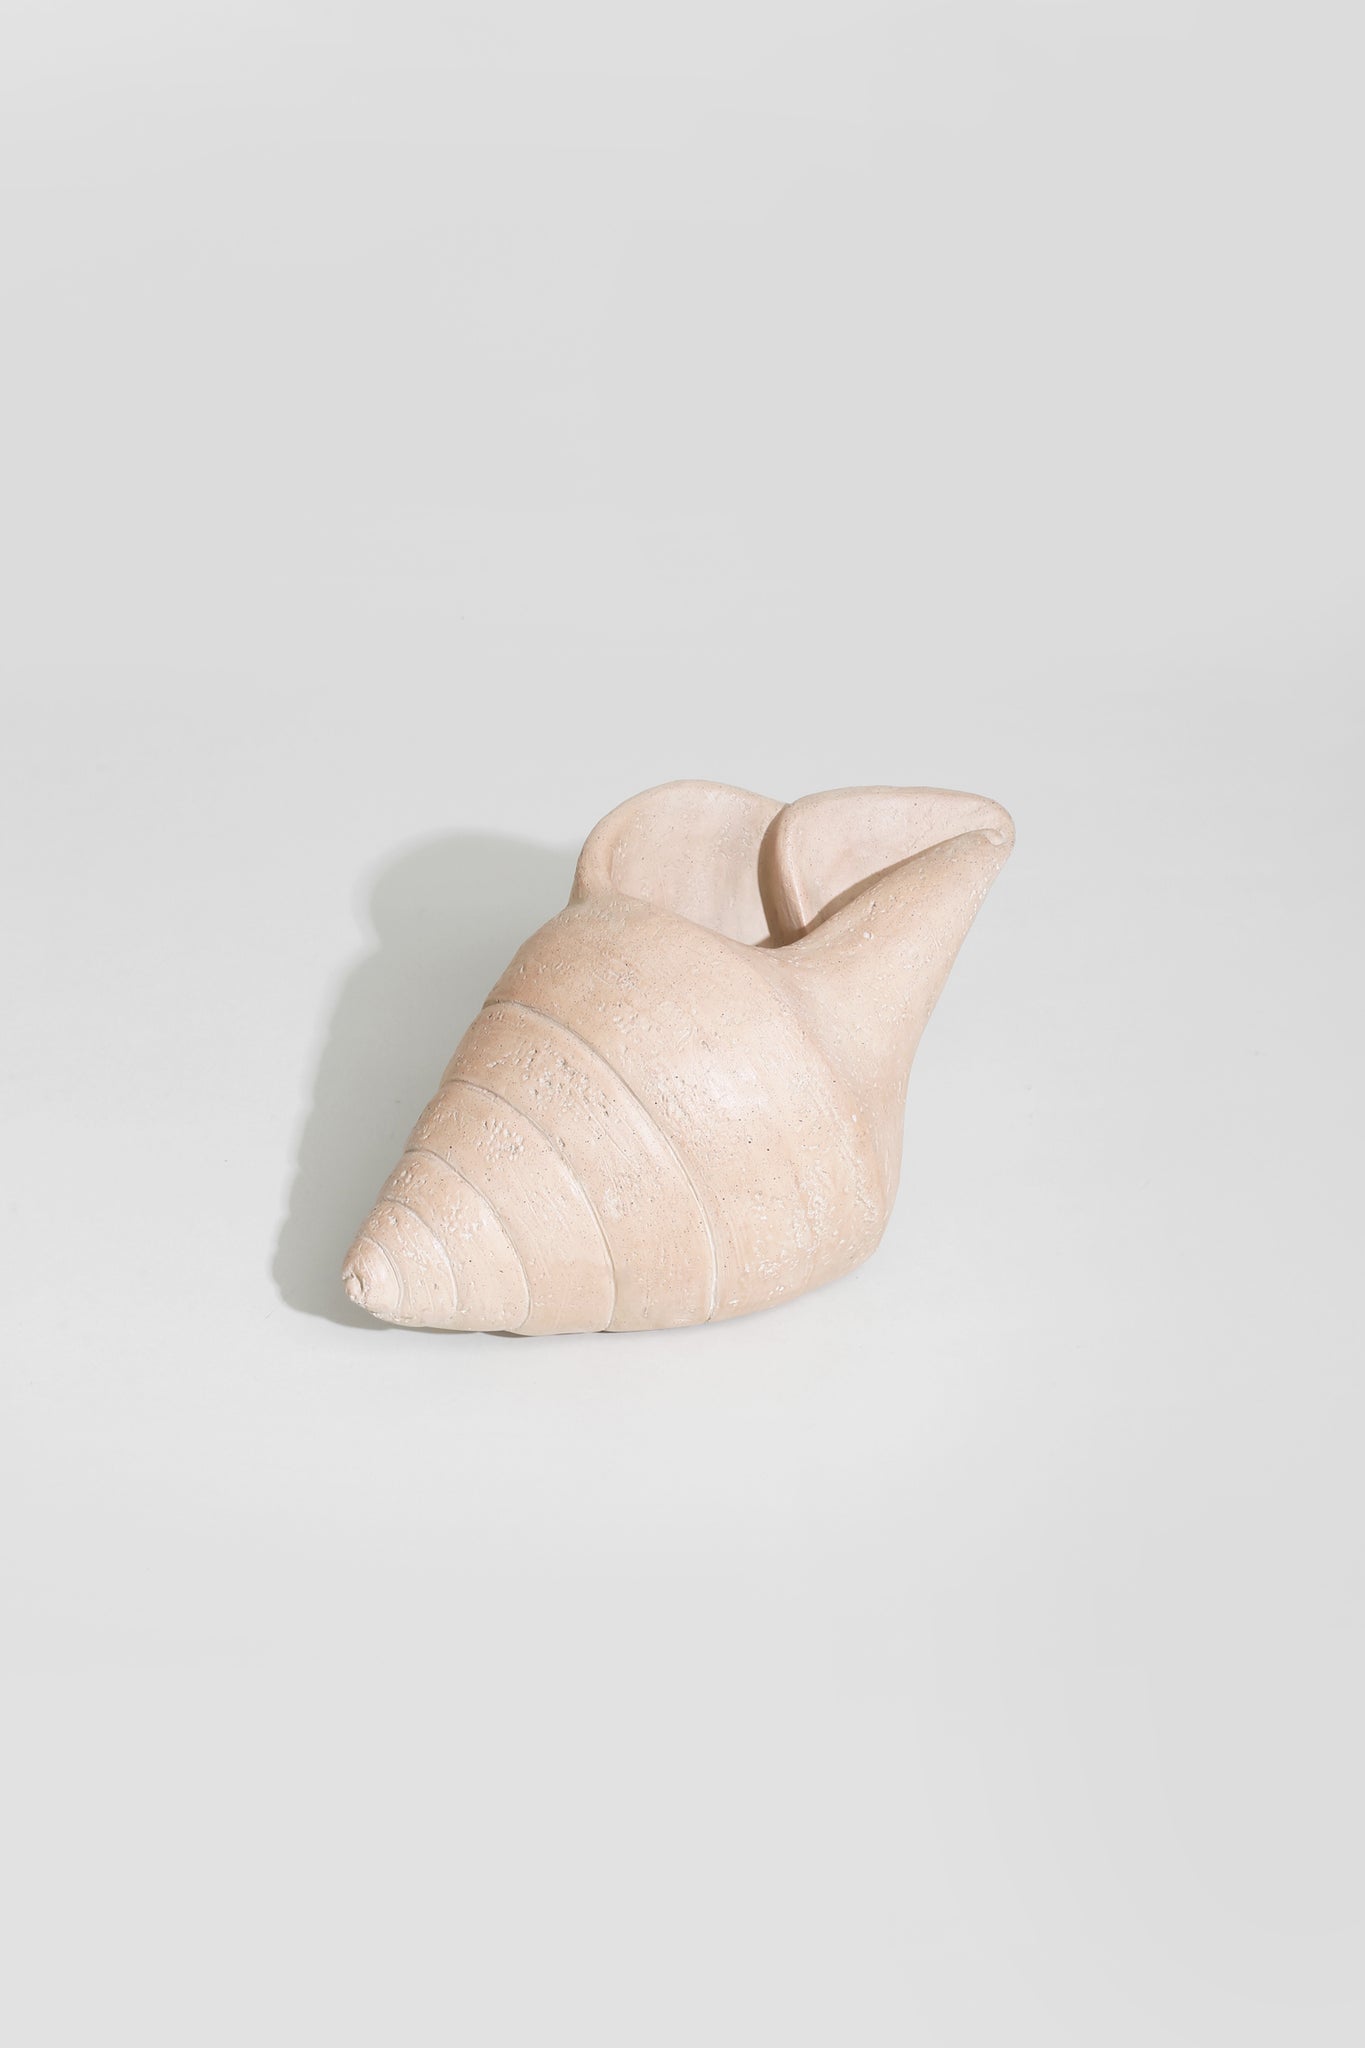 Plaster Shell Sculpture